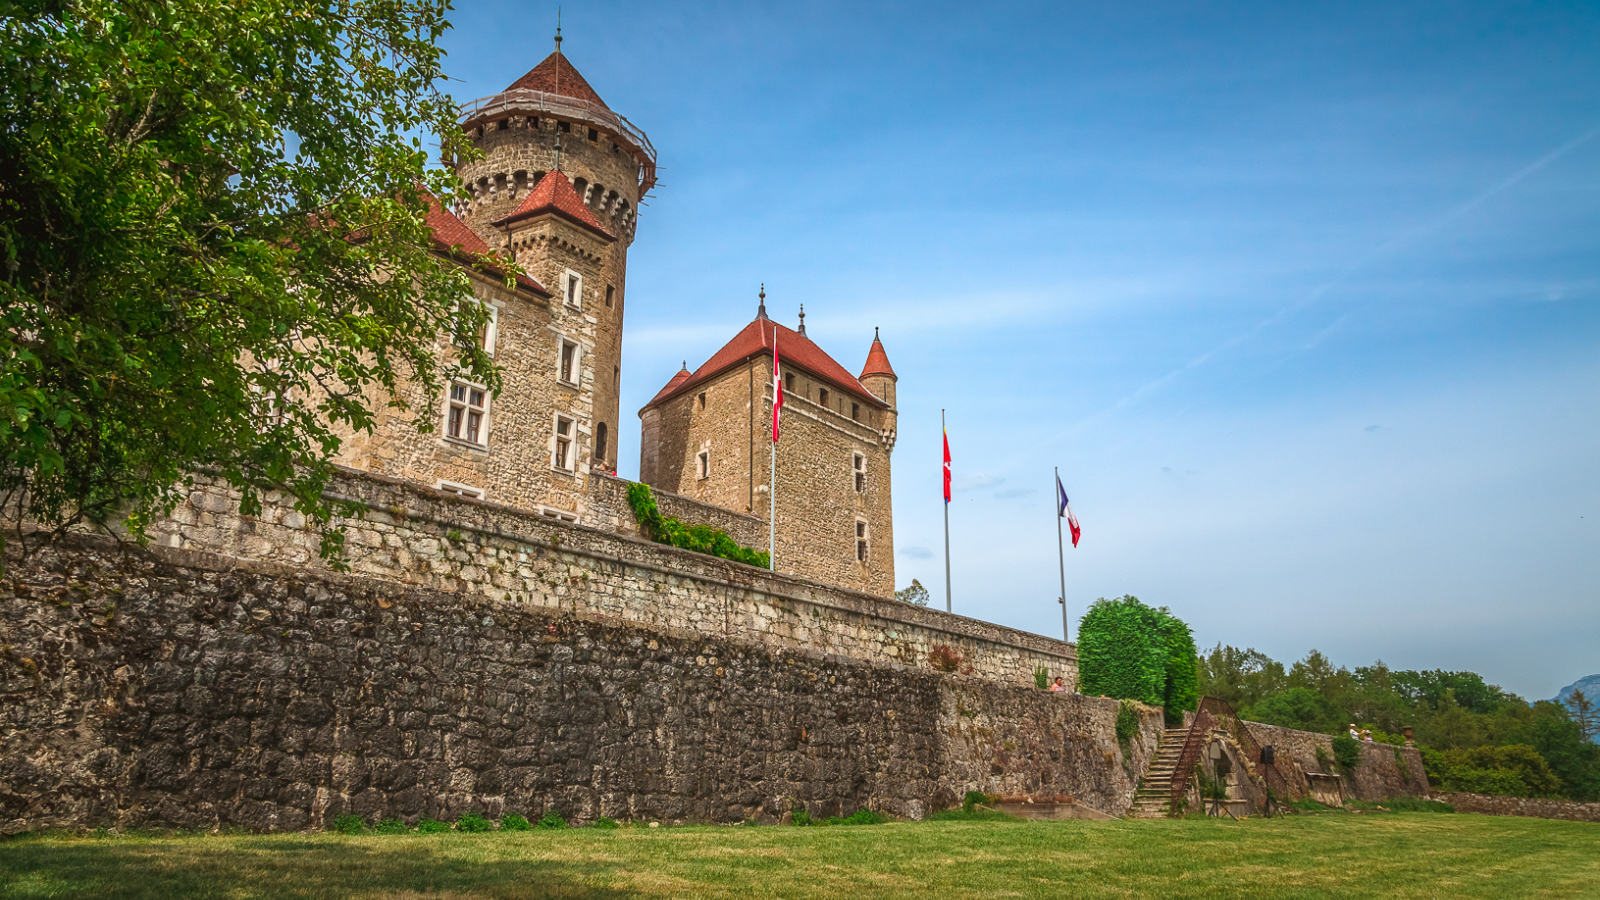 Domaine et Château de Montrottier